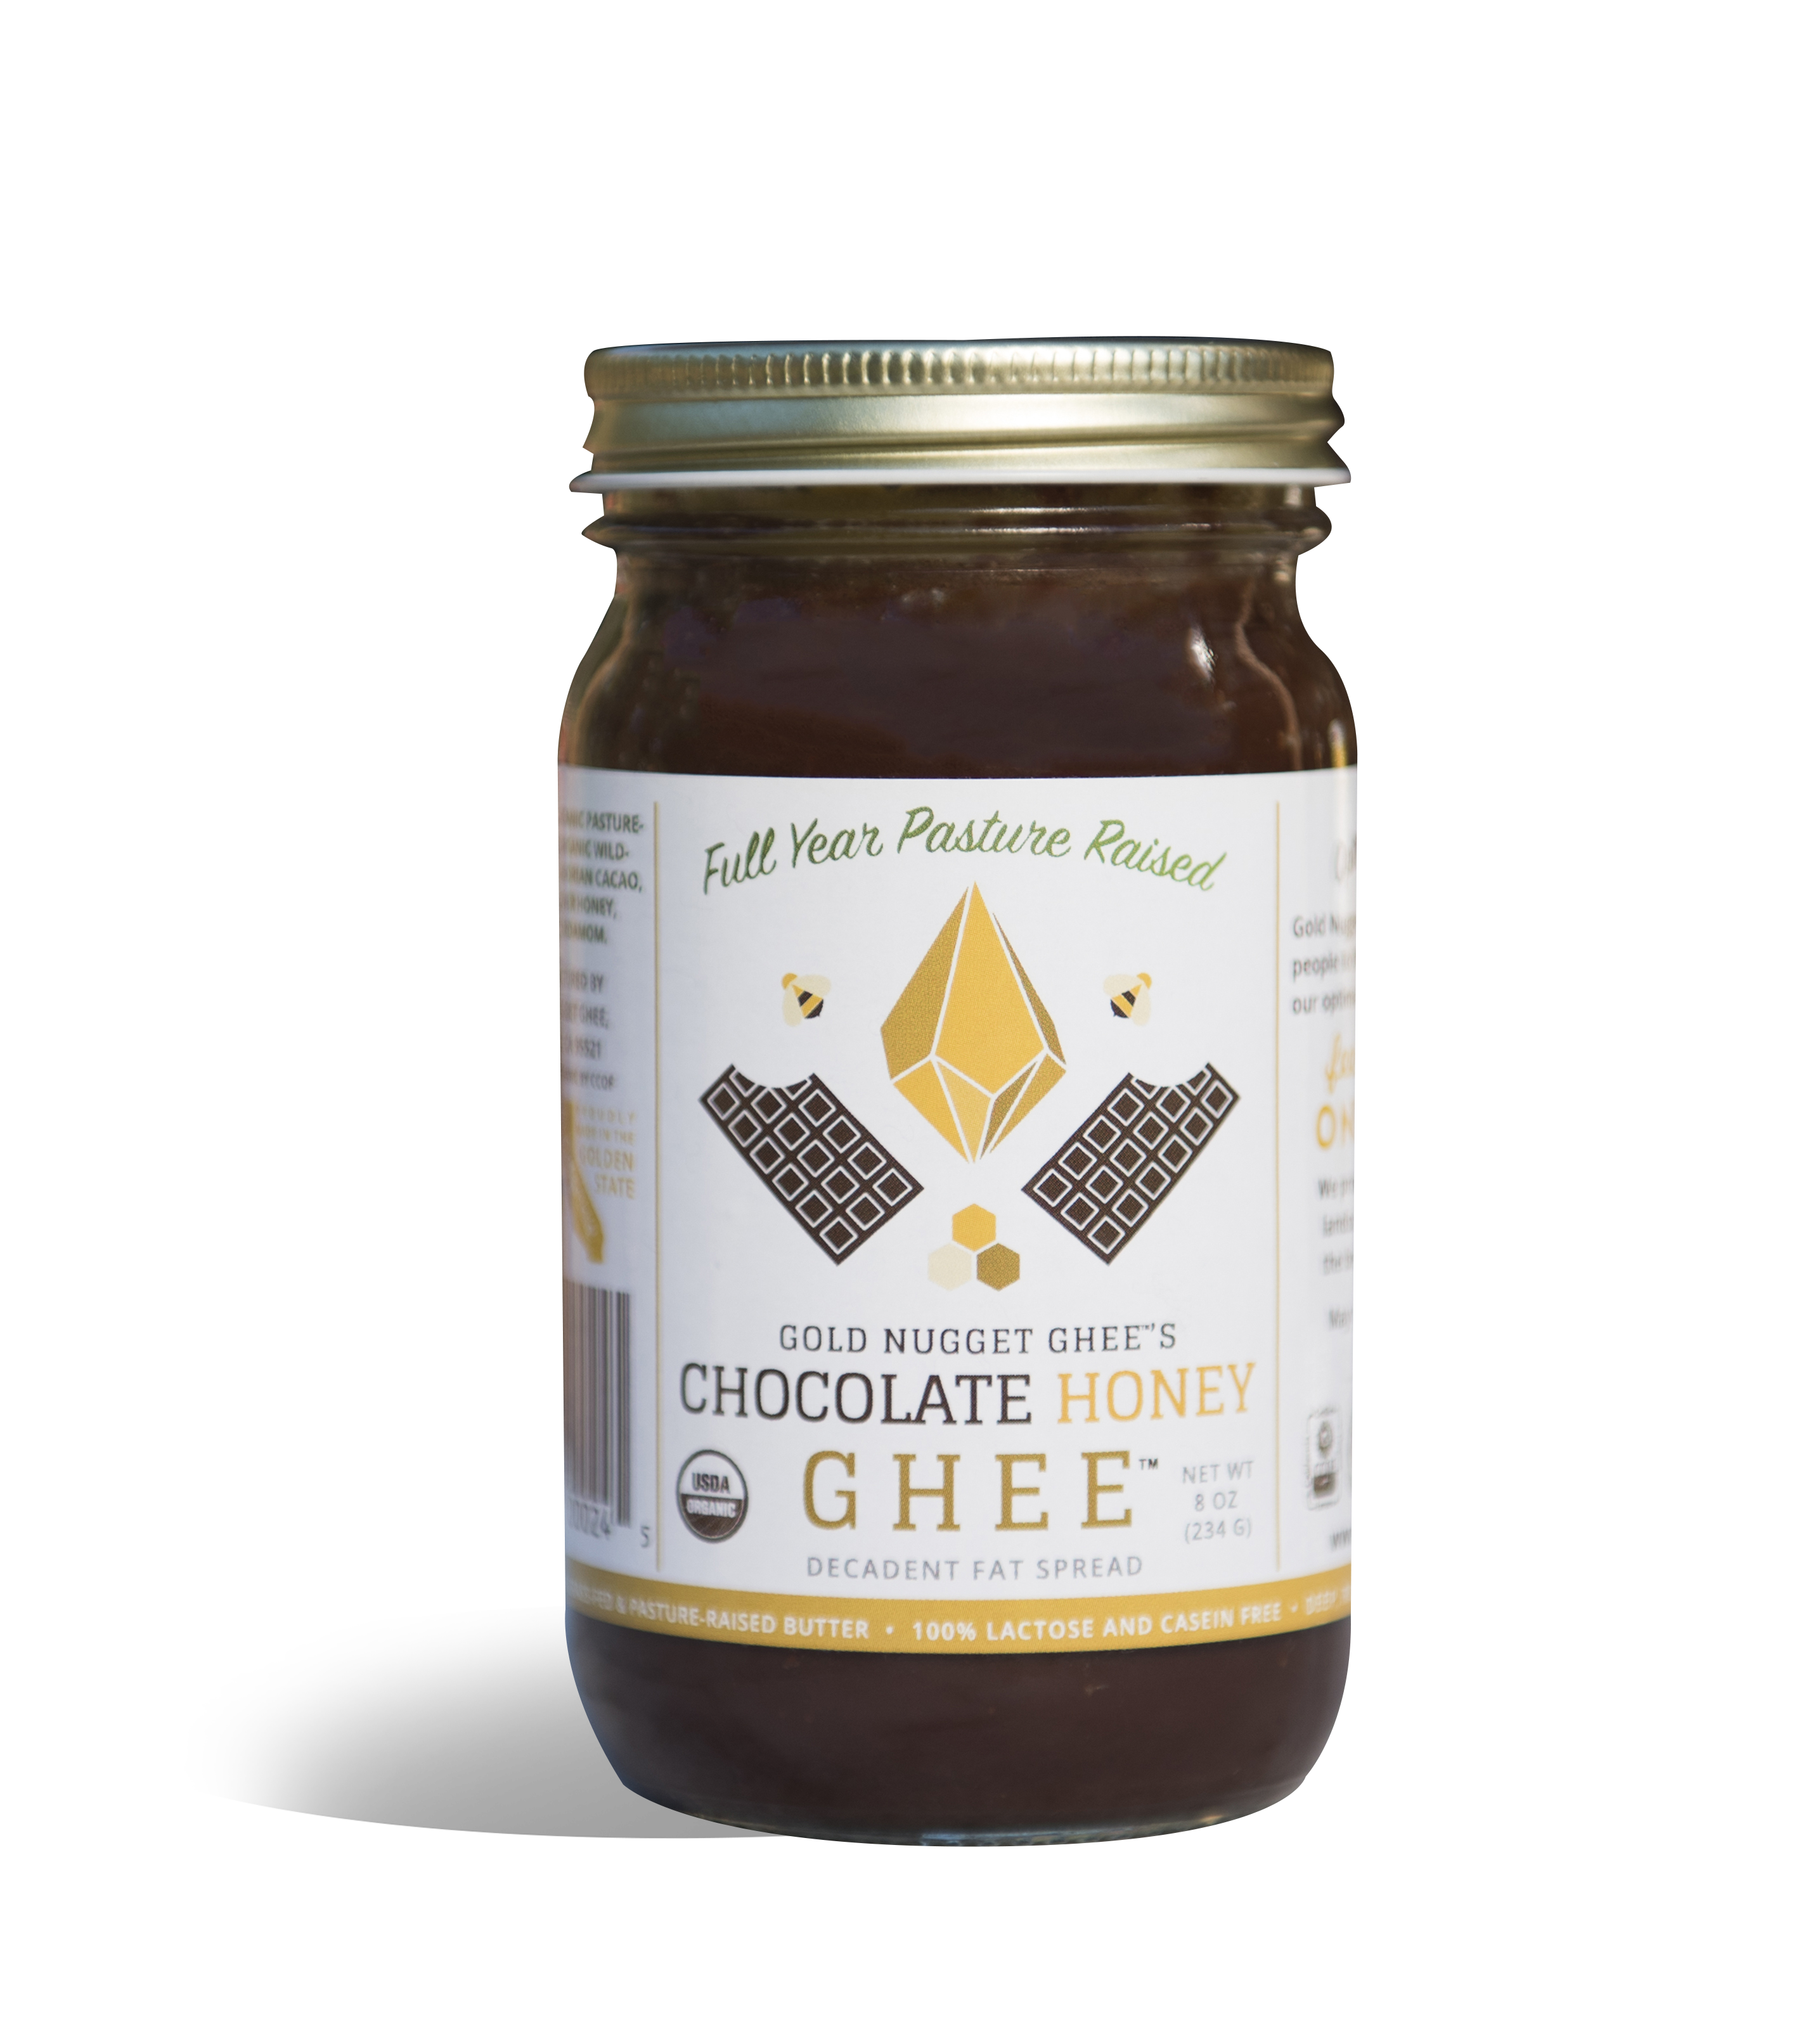 Chocolate Honey Ghee